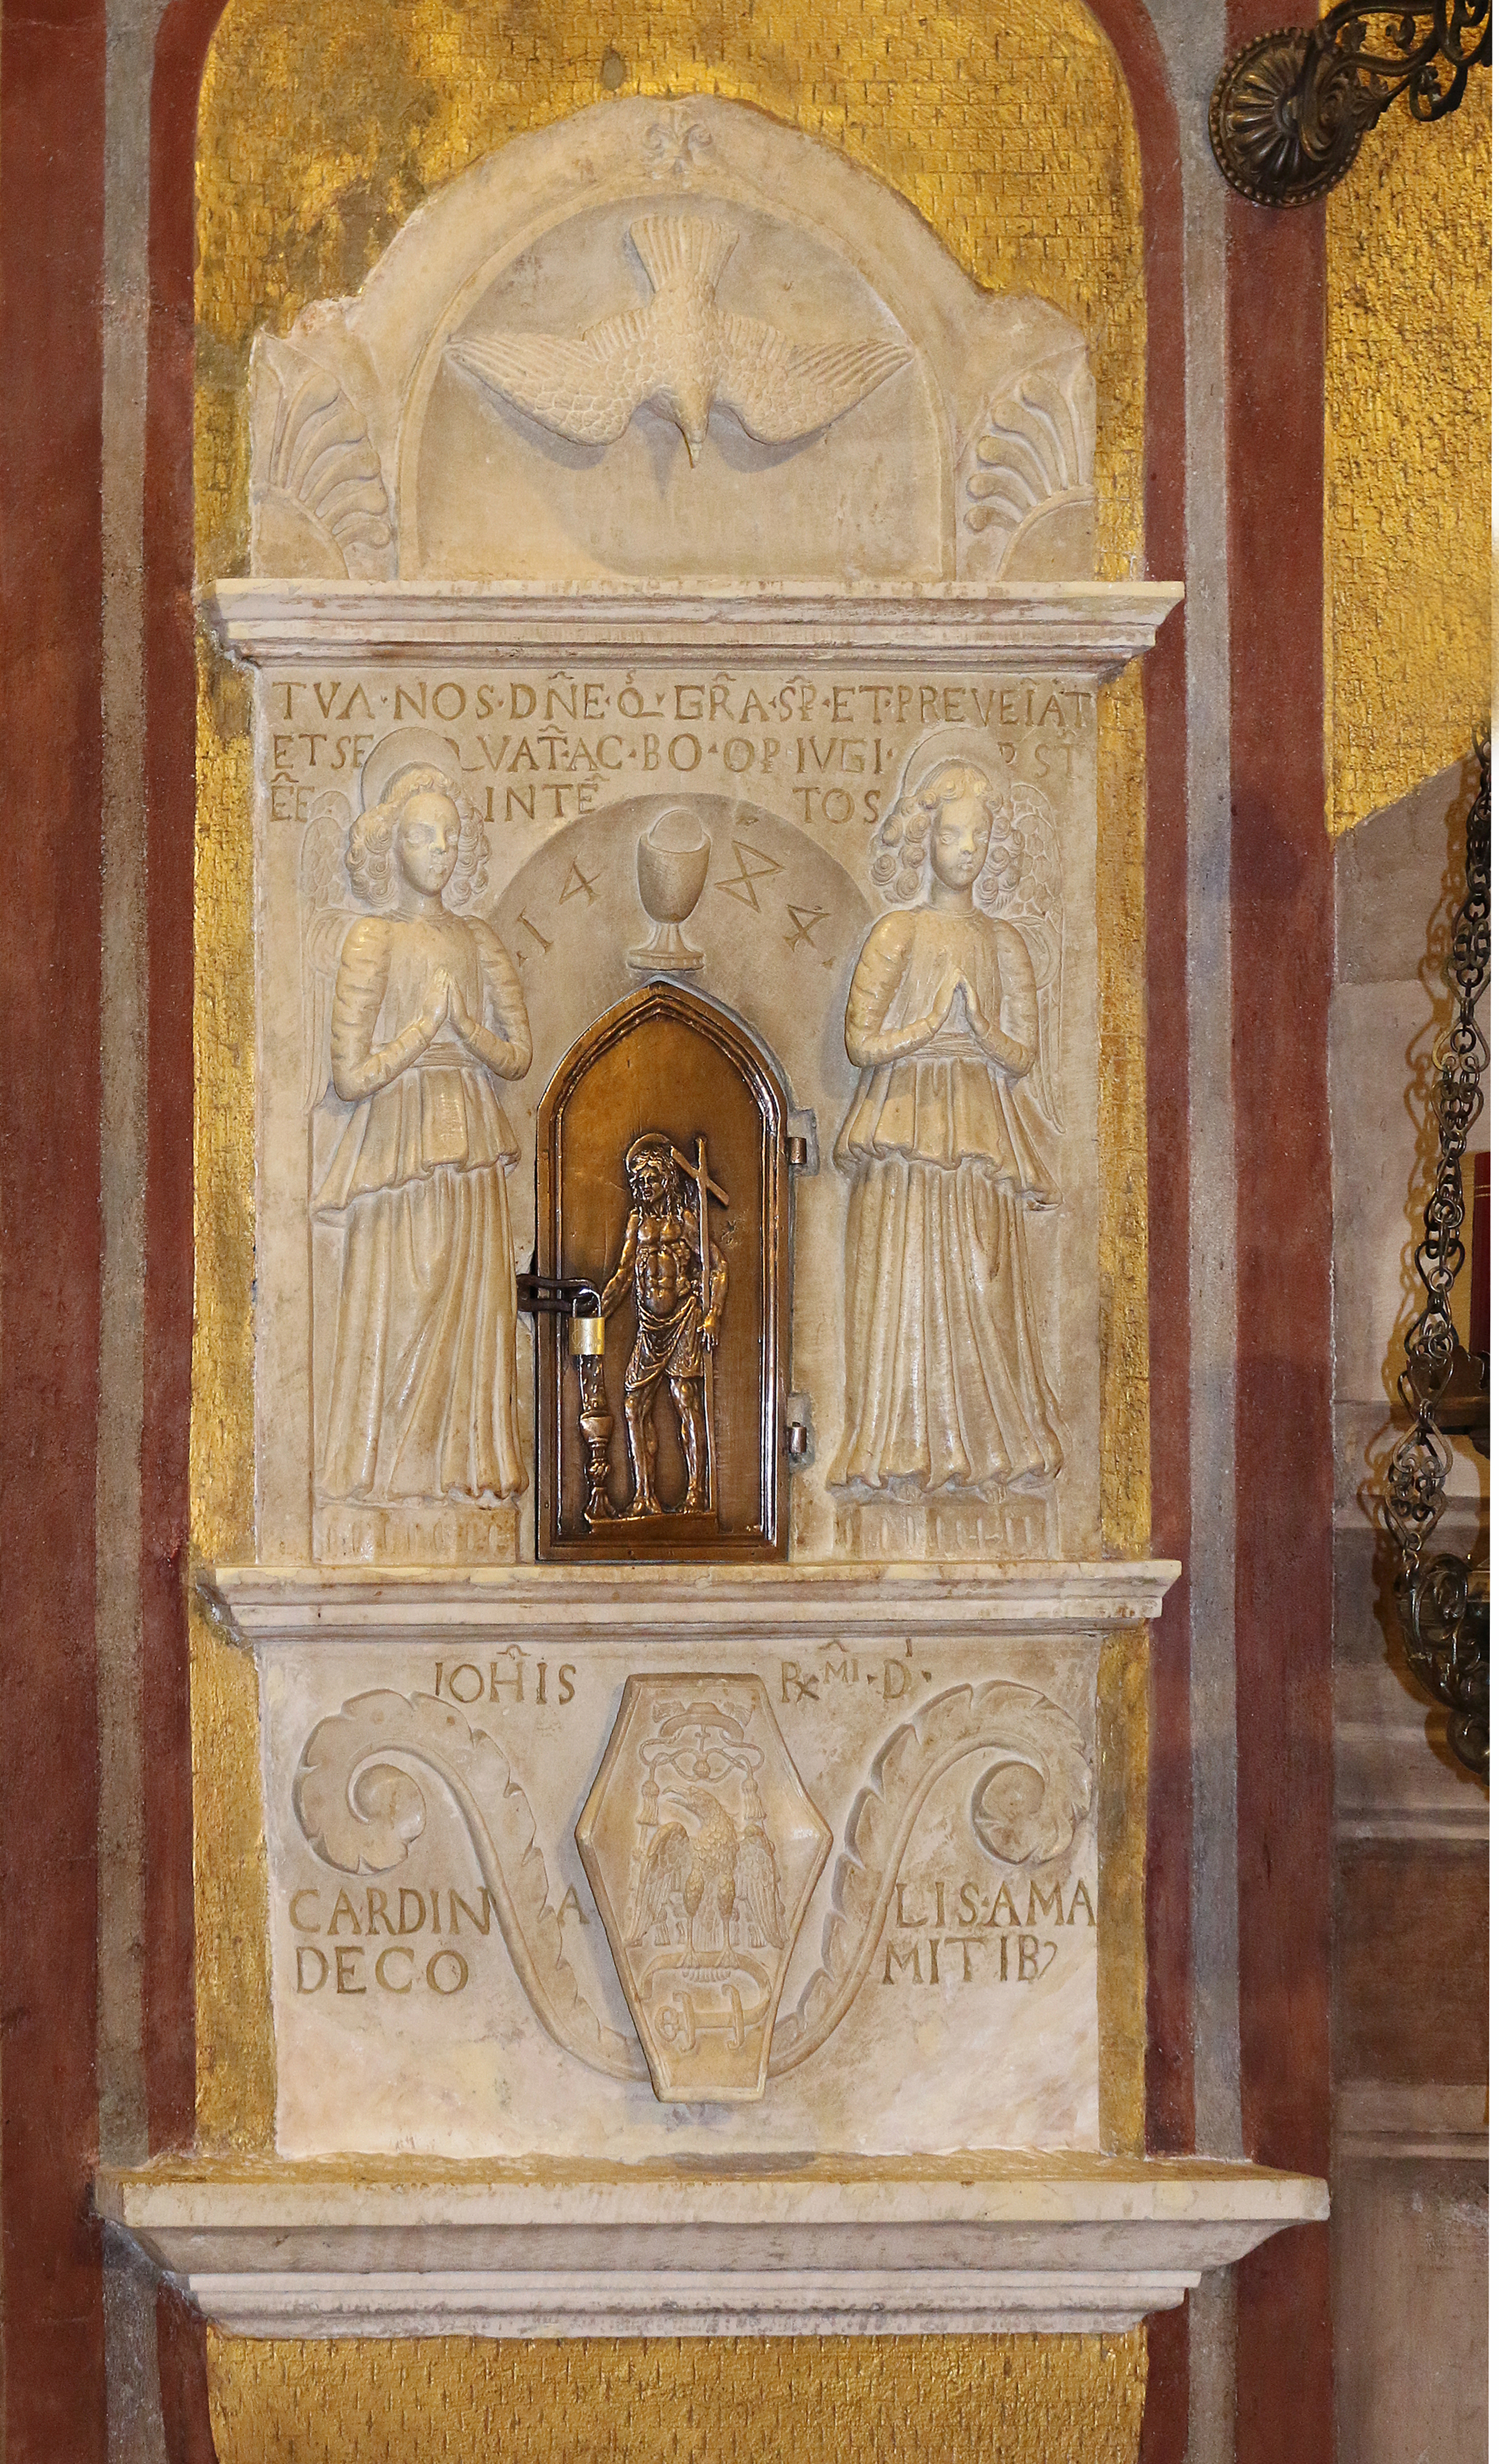 ill. 10 : Autore ignoto (1484), tabernacolo